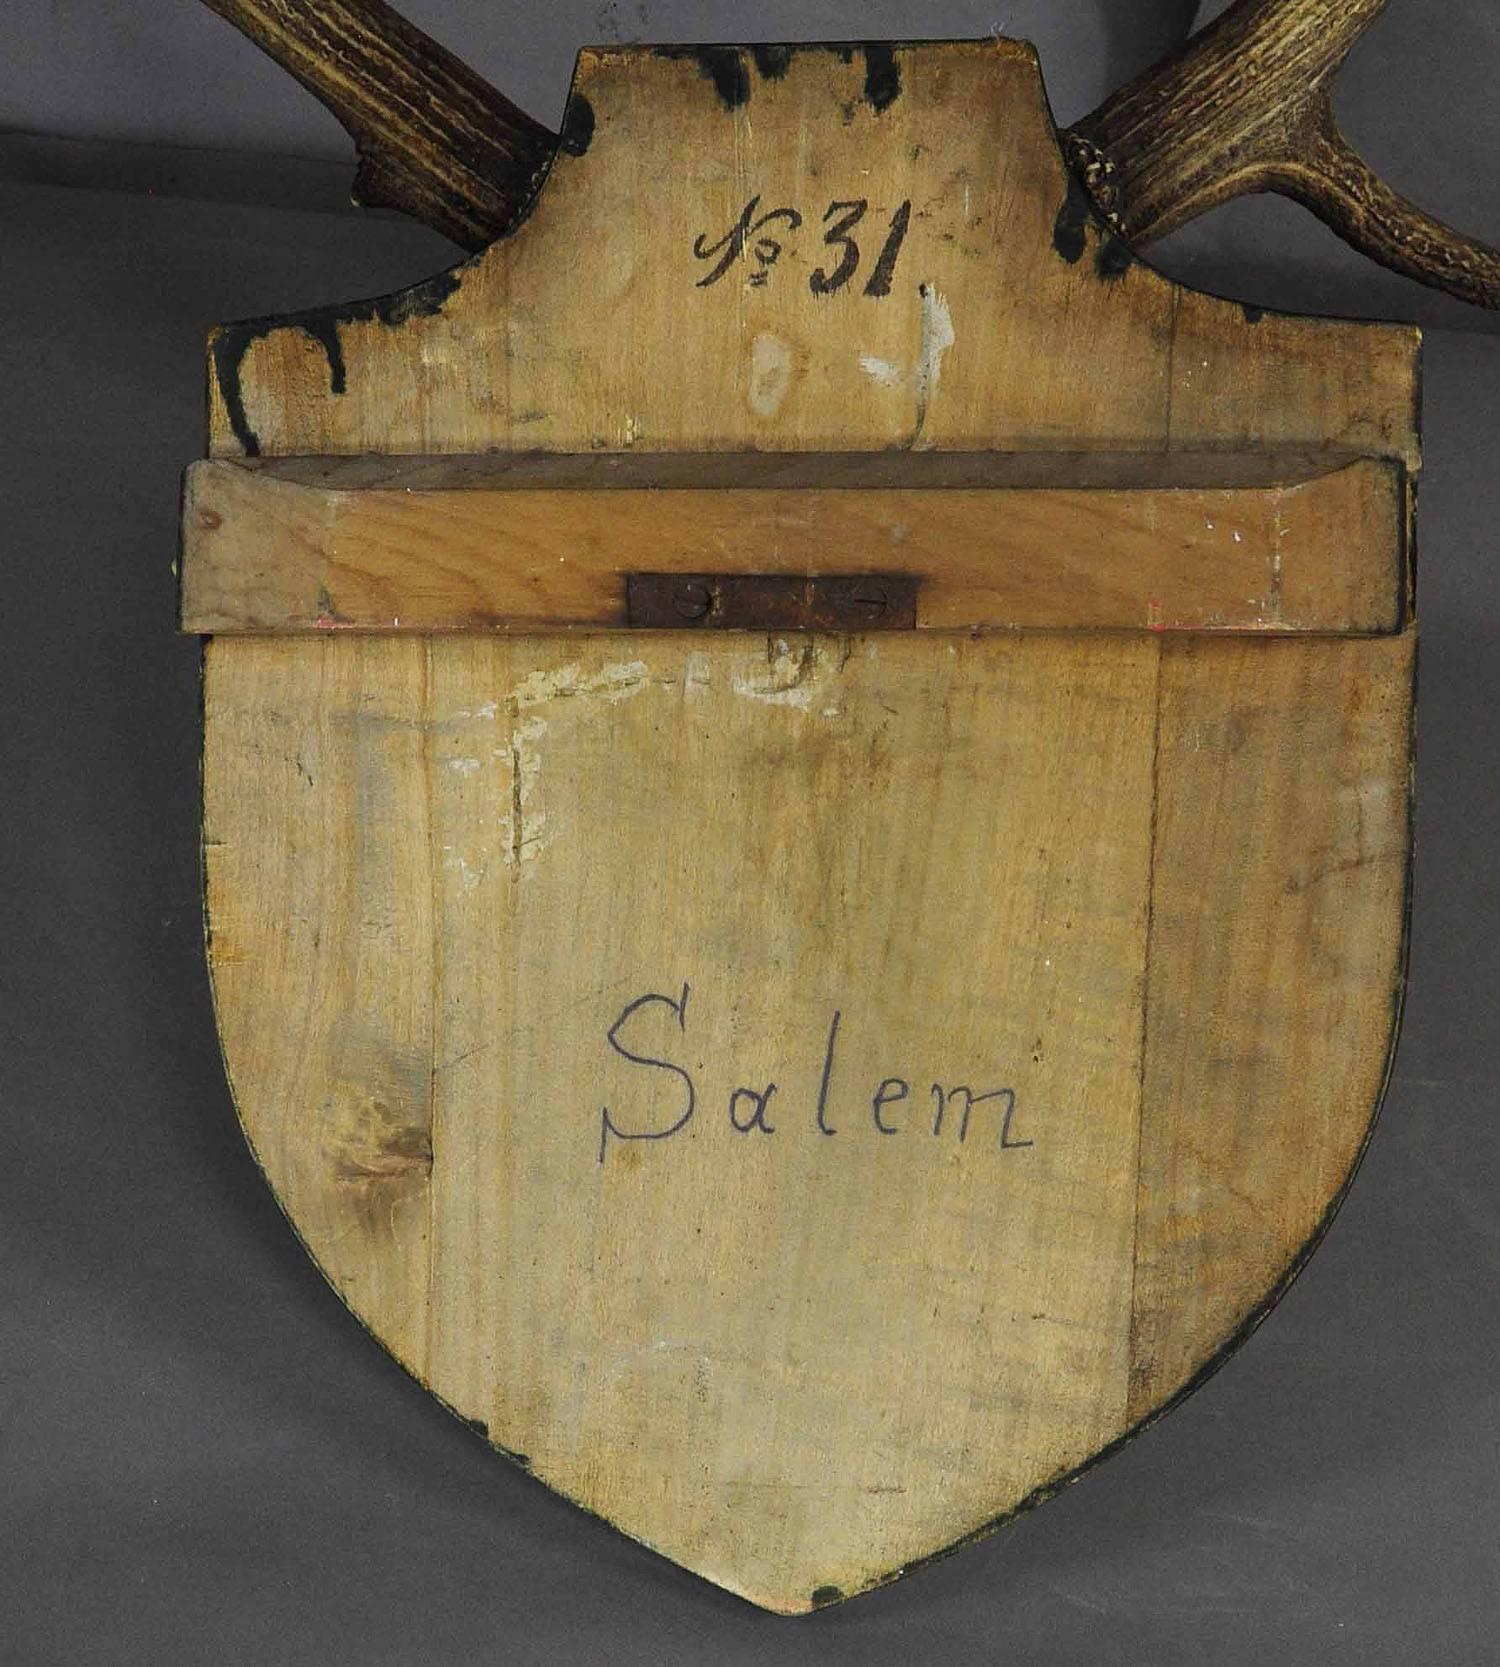 Antler Antique Black Forest Deer Trophy from Salem, Germany, 1876